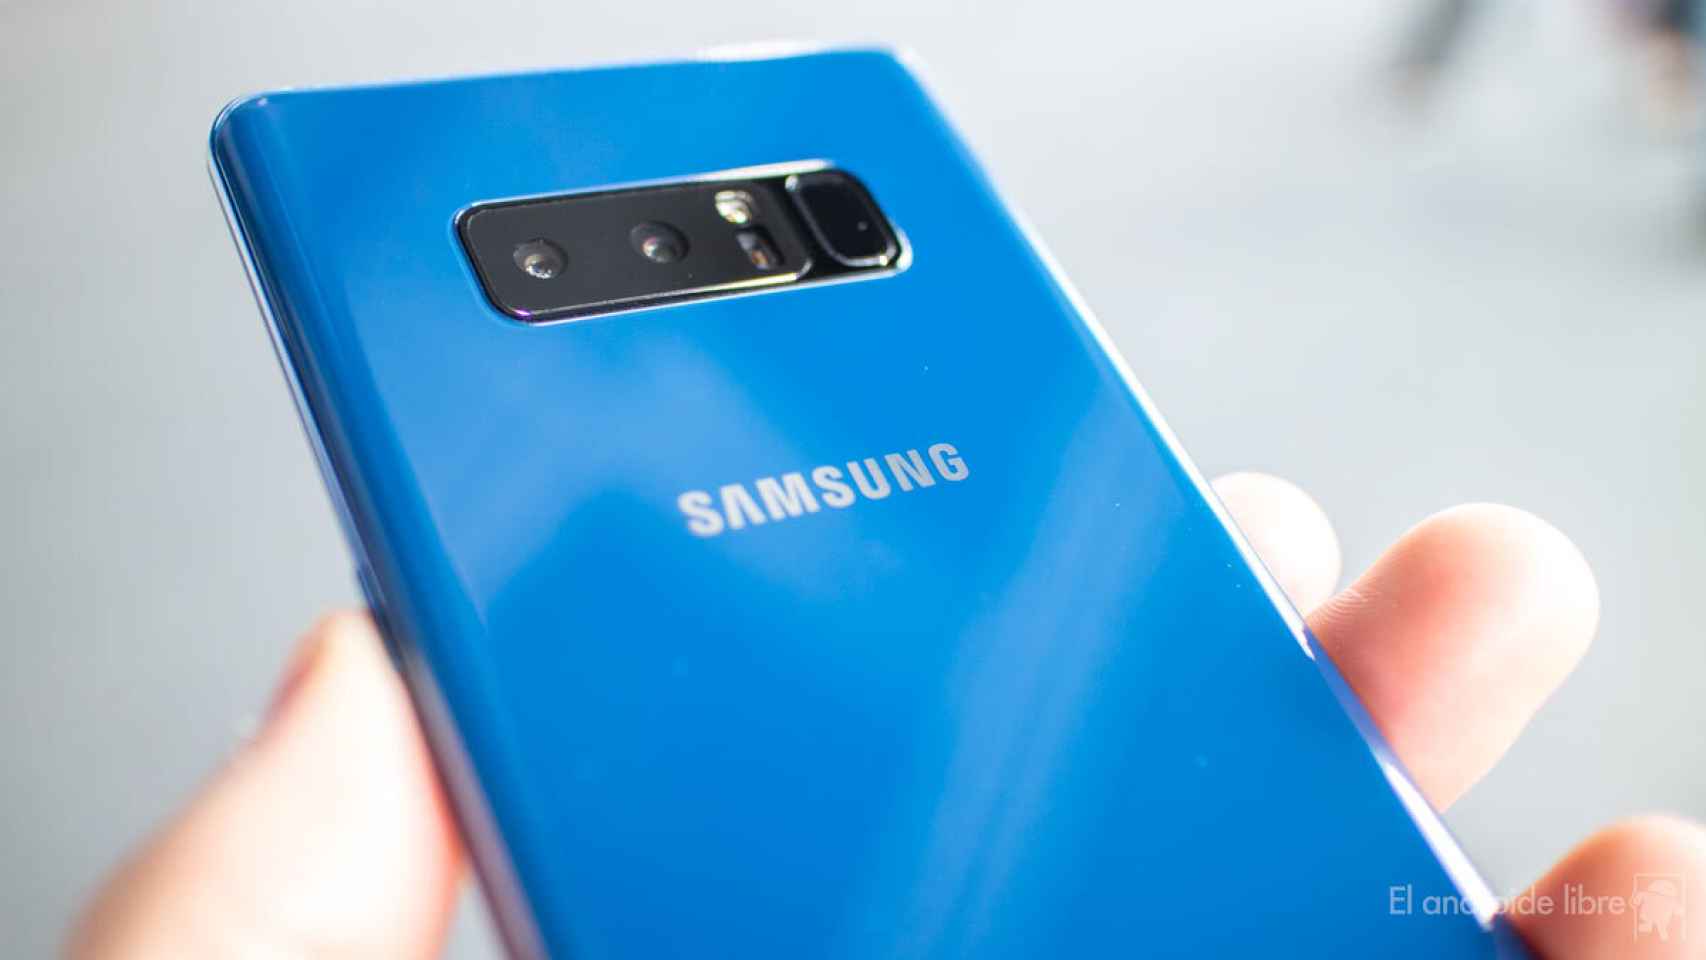 Dónde comprar el Samsung Galaxy Note 8: Amazon, El Corte Inglés, Vodafone…